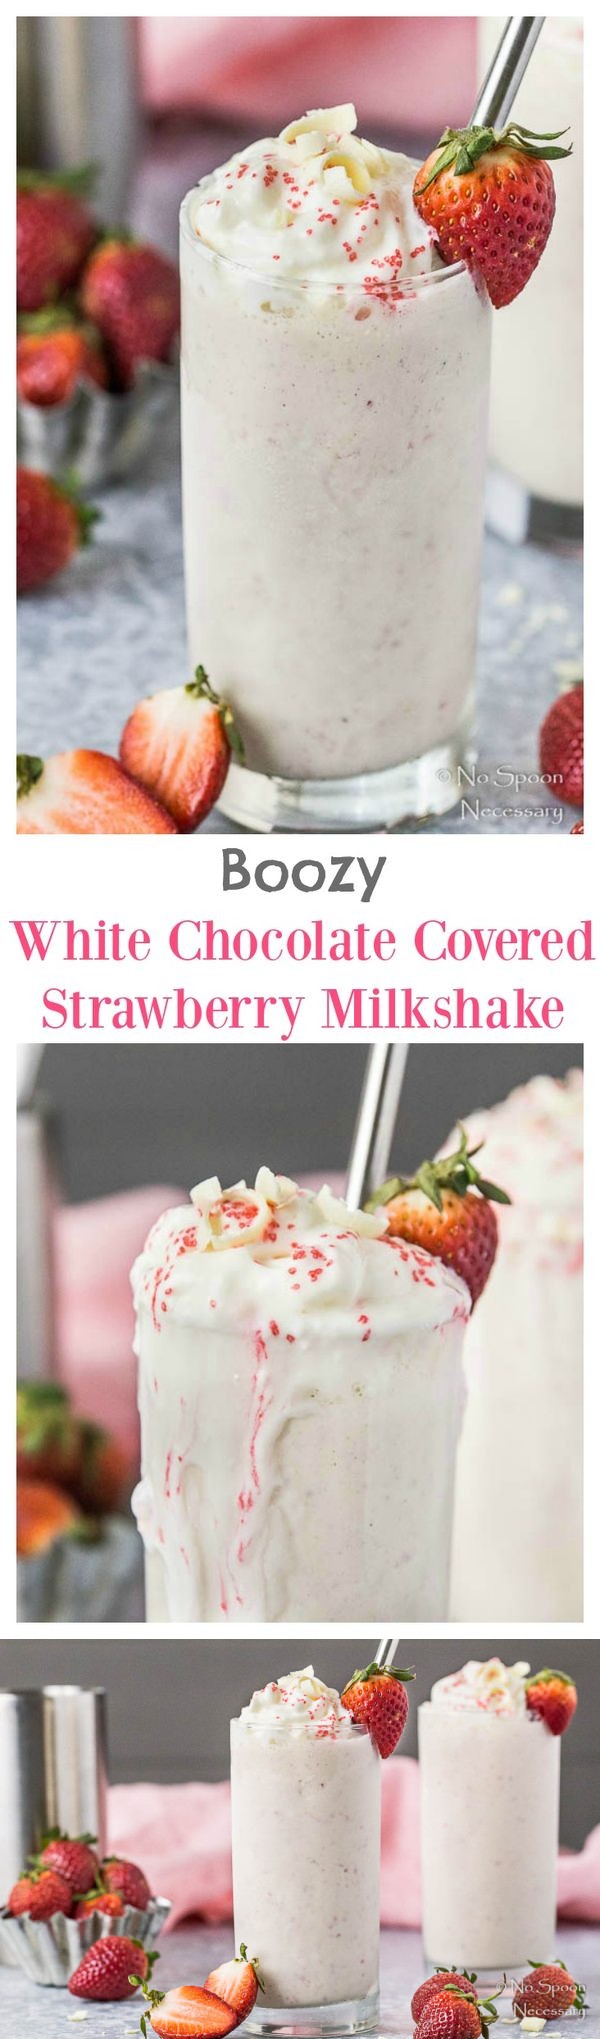 White Chocolate Covered Strawberry Boozy Milkshake